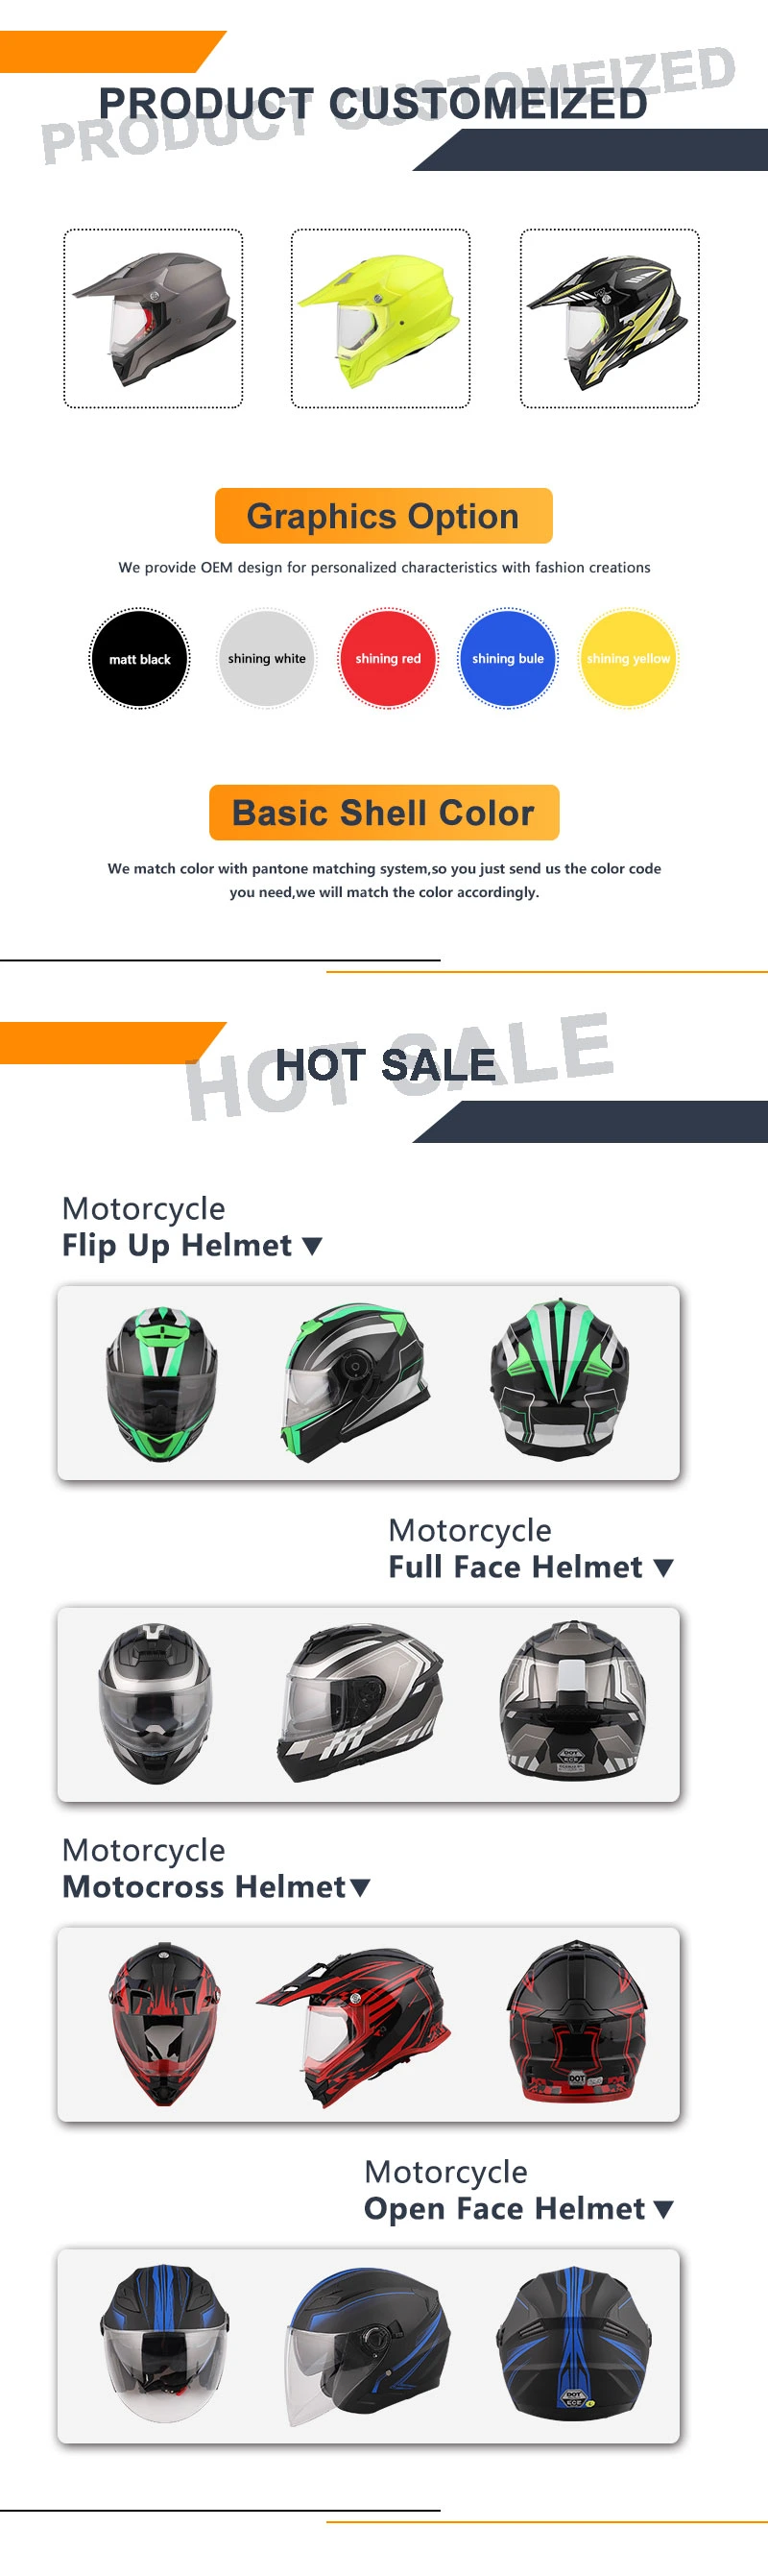 Cool Motorcycle Helmets for Sale Motorcycle Parts Helmet